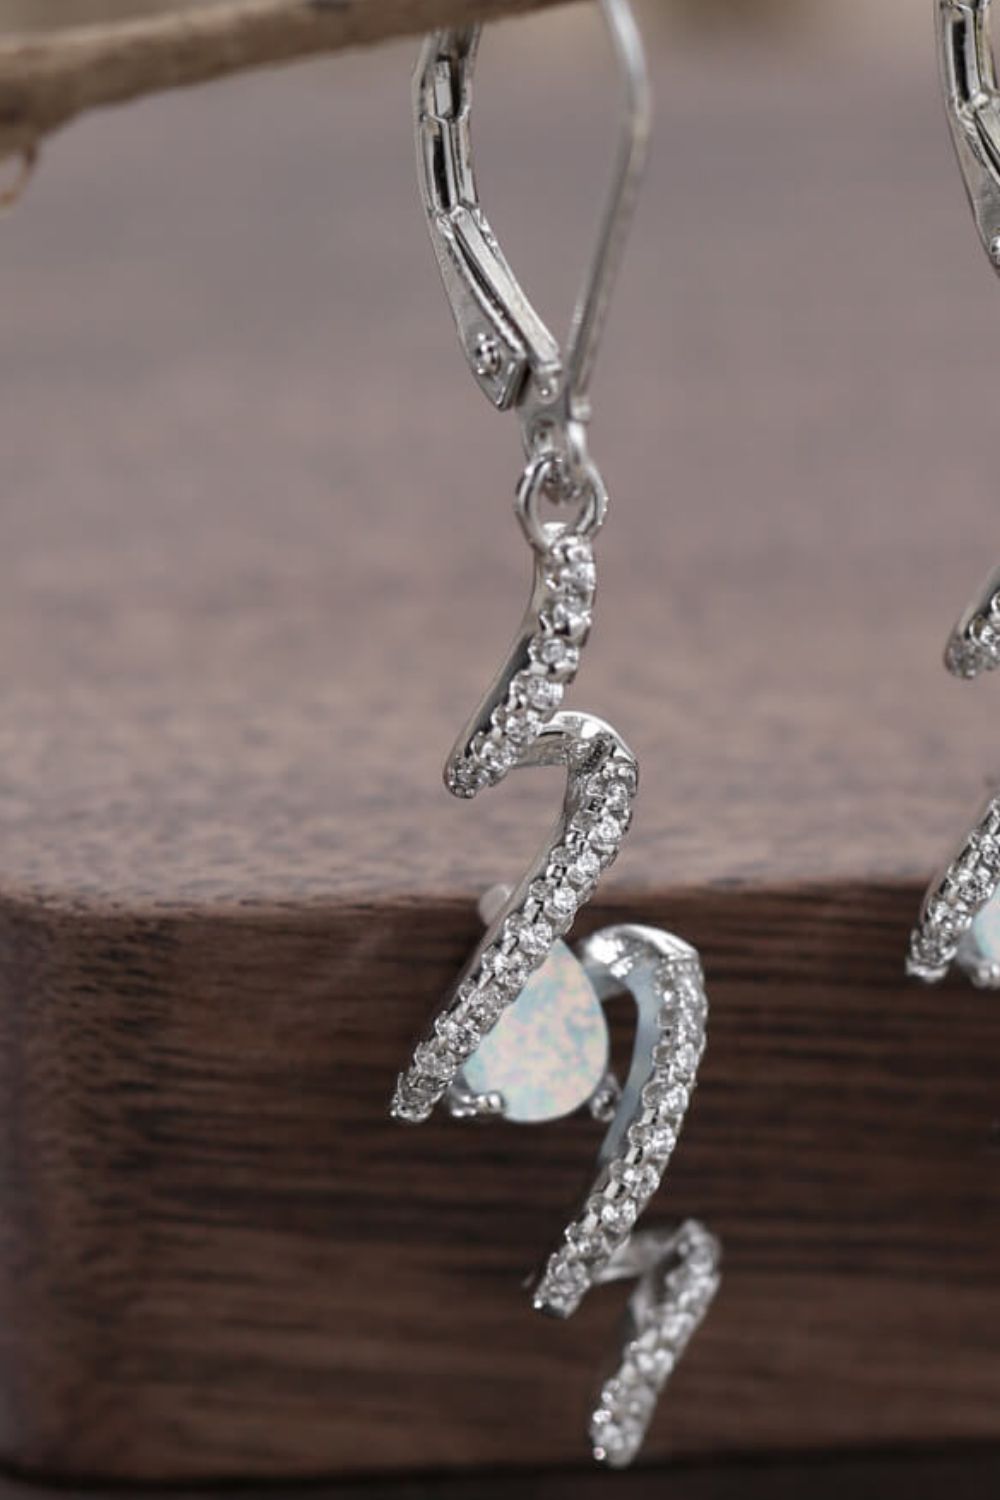 Twisted Opal Drop Earrings - Shop women apparel, Jewelry, bath & beauty products online - Arwen's Boutique